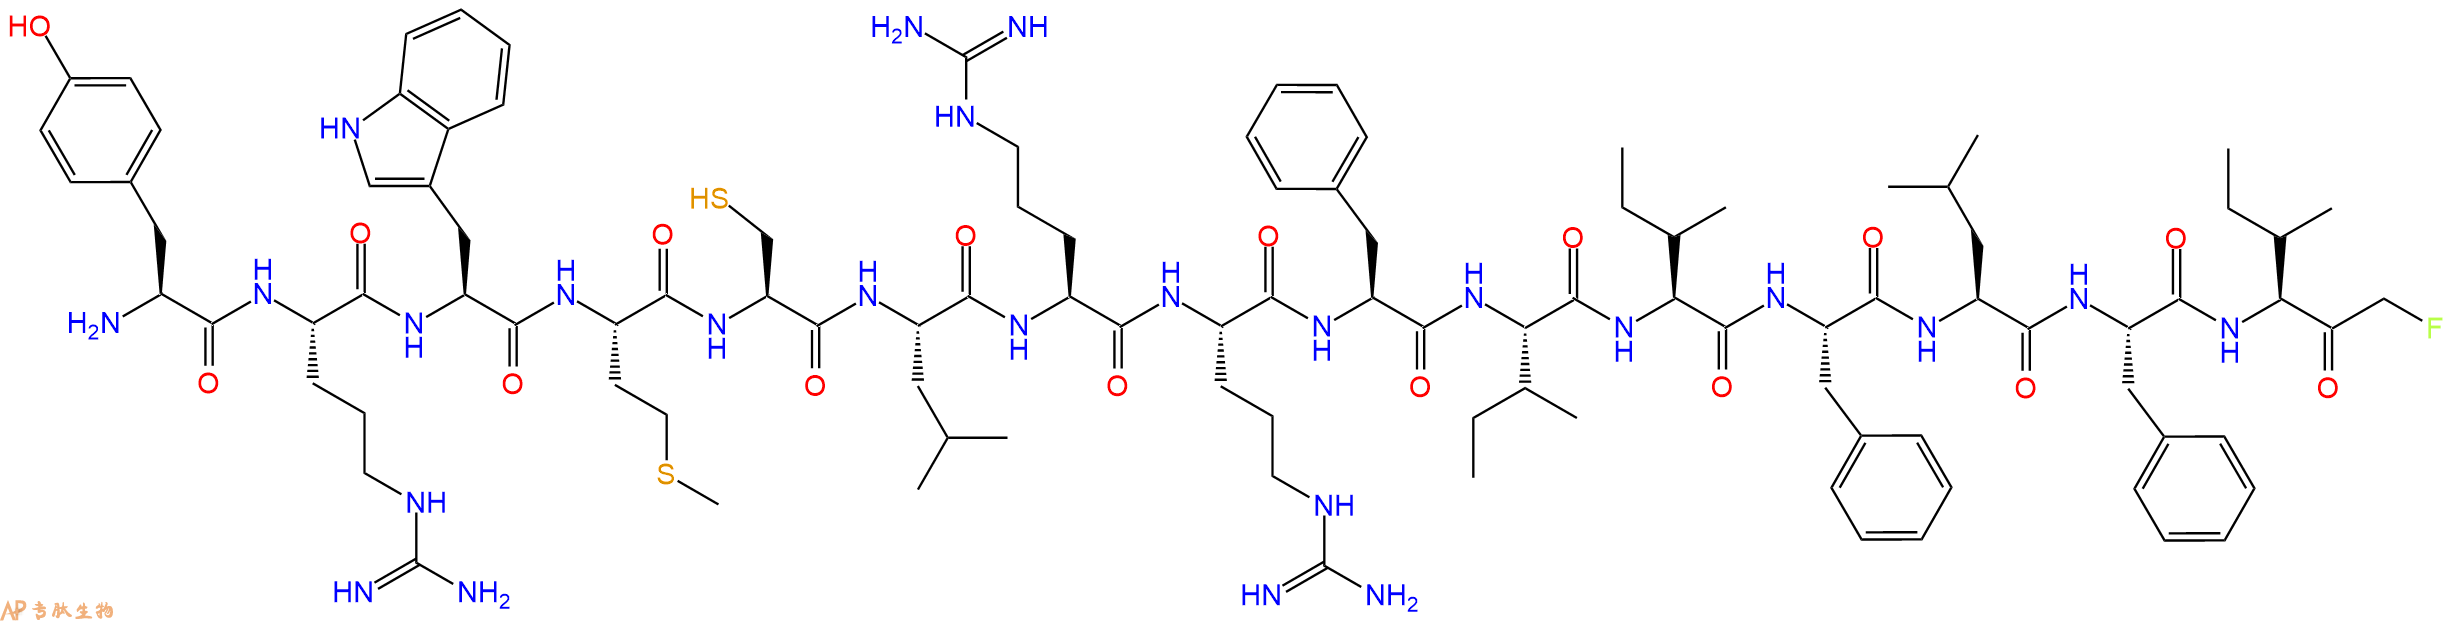 专肽生物产品H2N-Tyr-Arg-Trp-Met-Cys-Leu-Arg-Arg-Phe-Ile-Ile-Ph